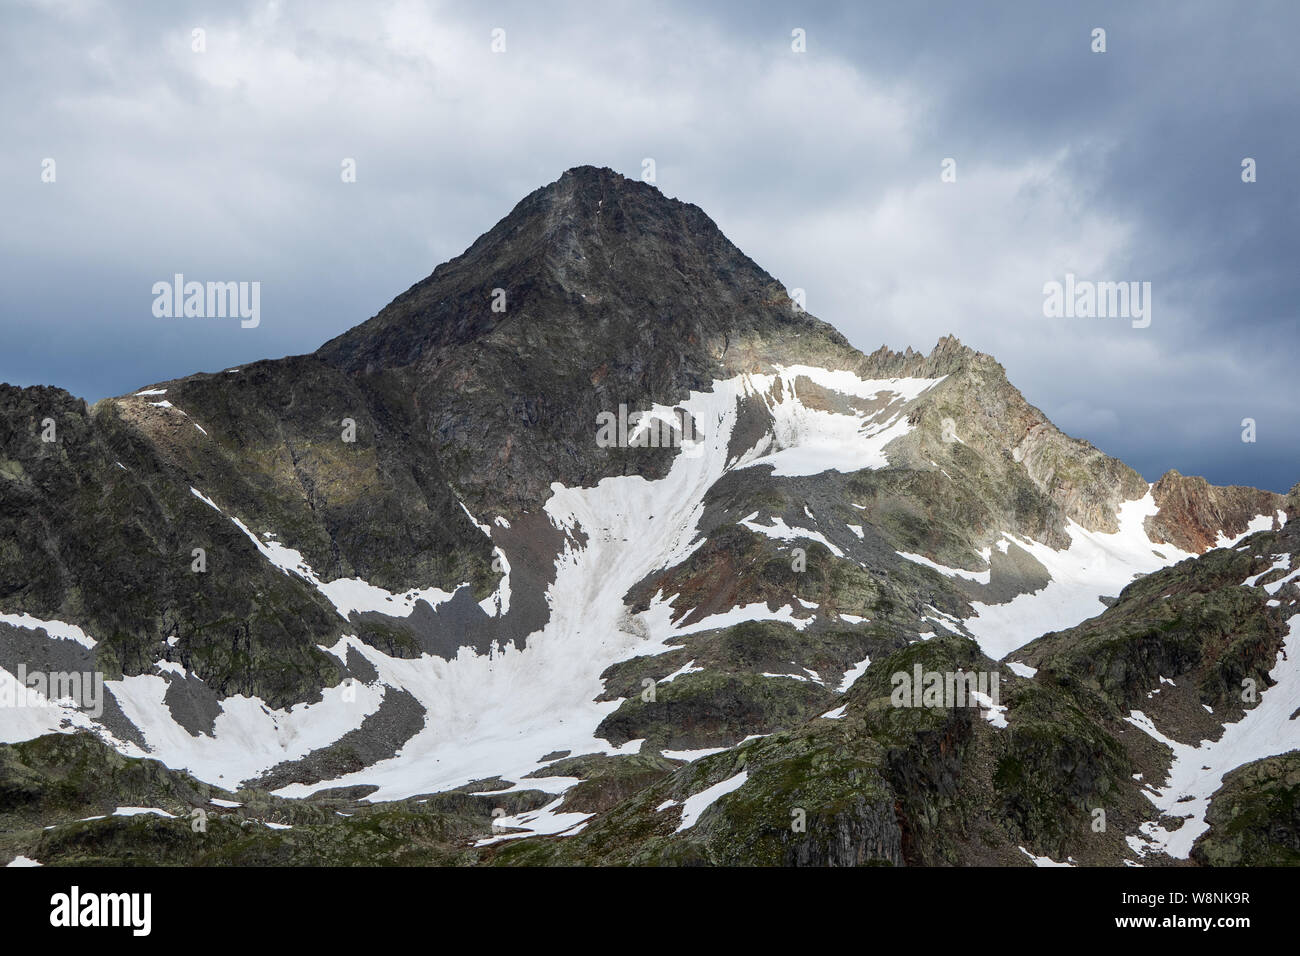 Glodisspitze (Glodis Spitz) mountain peak. Schobergruppe. Hohe Tauern Nationalpark. Austrian Alps. Europe. Stock Photo